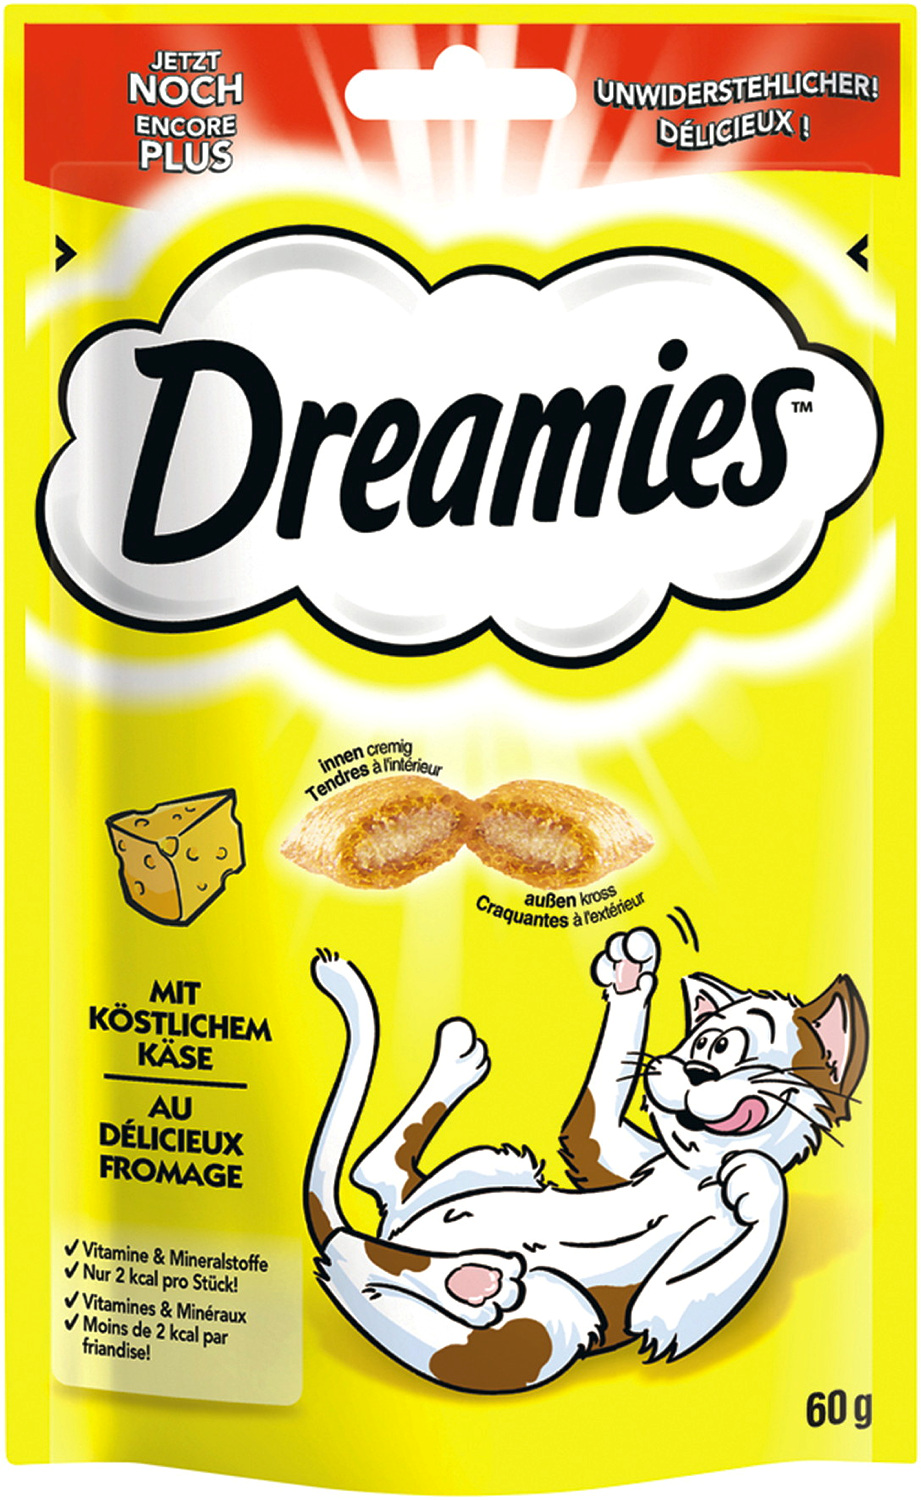 Dreamies™ mit köstlichem Käse 60 g